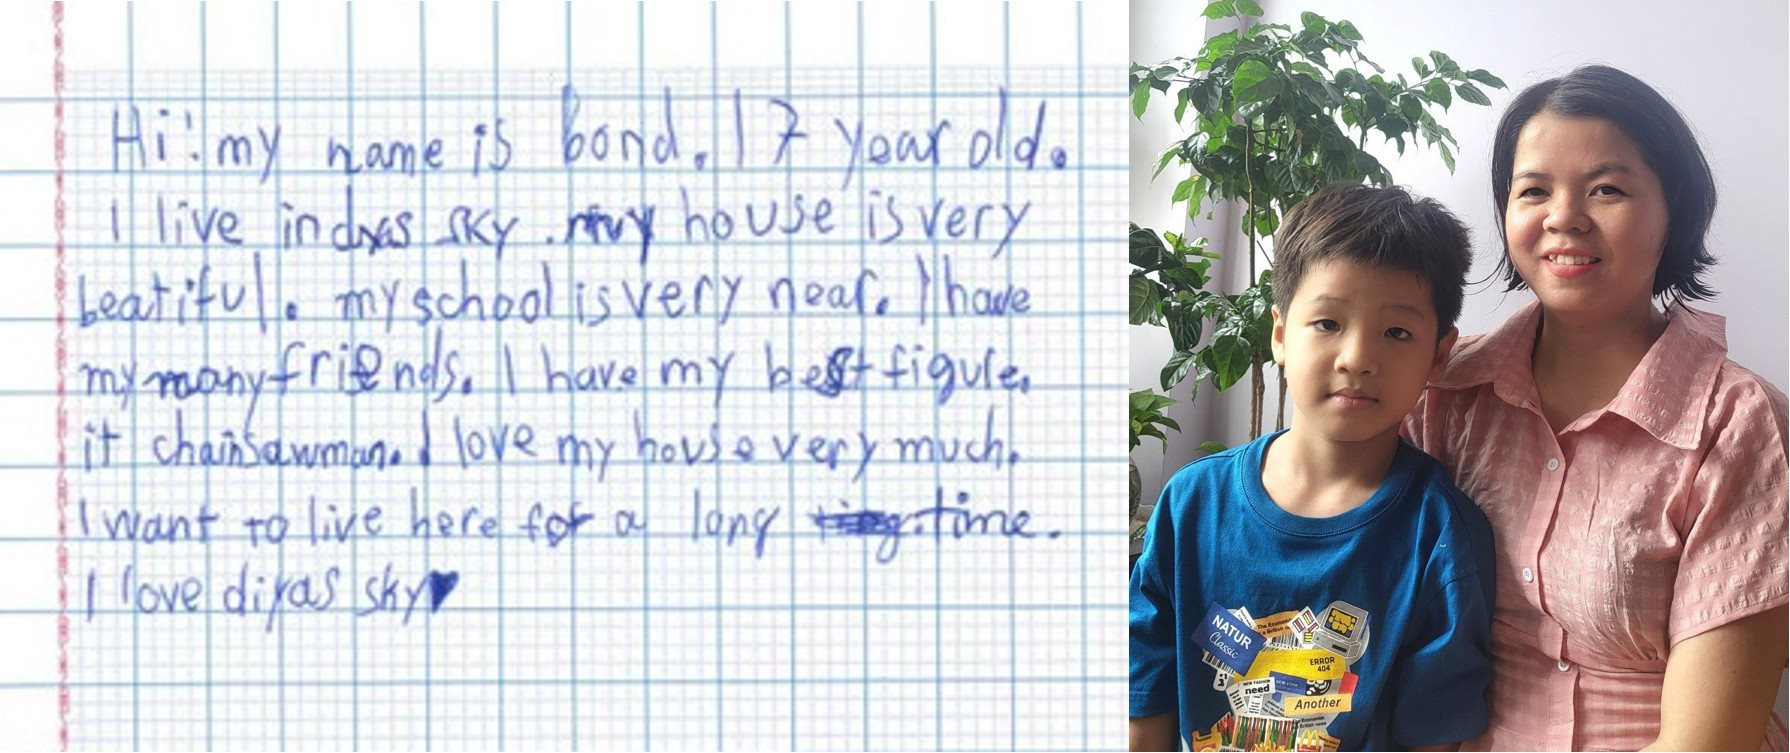 Bài văn của bé trai 7 tuổi và sự xúc động của người mẹ khi chạm đến giấc mơ có nhà